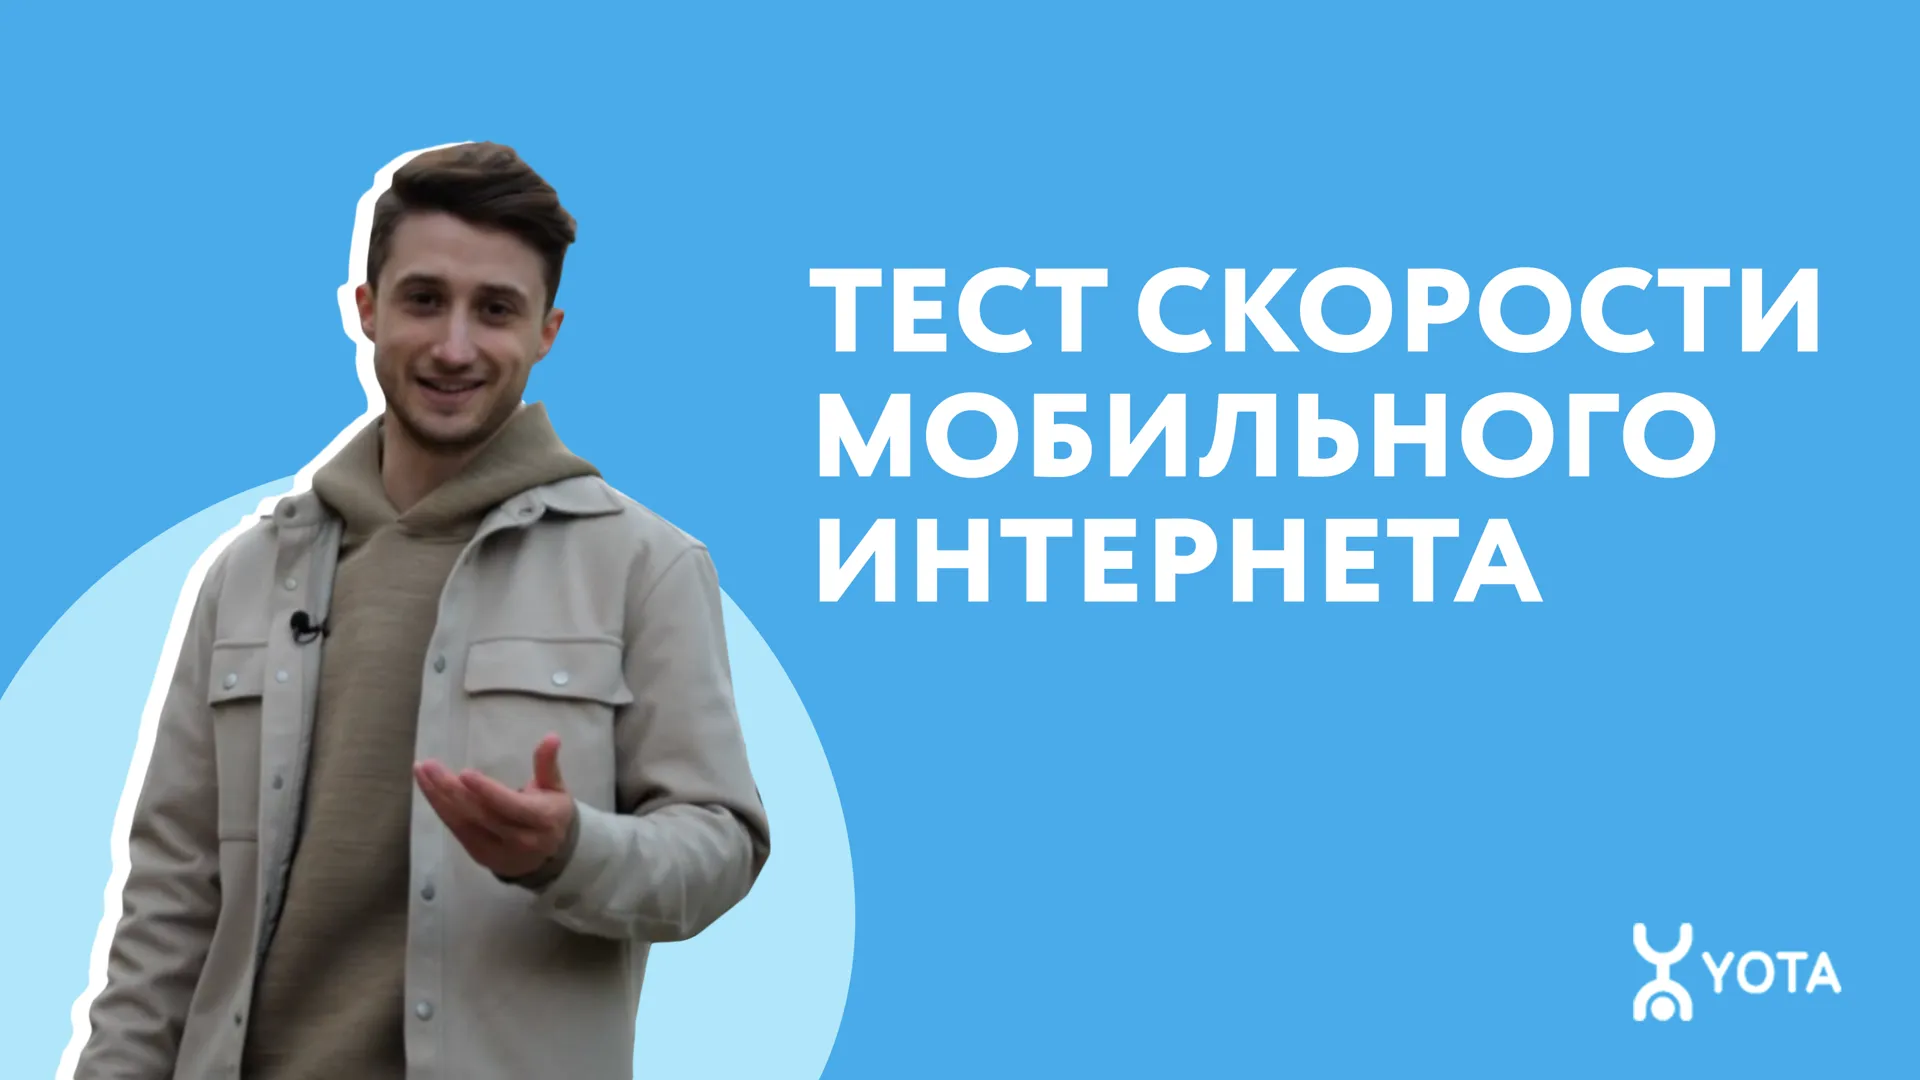 Yota выяснила у москвичей, что они знают о скорости мобильного интернета